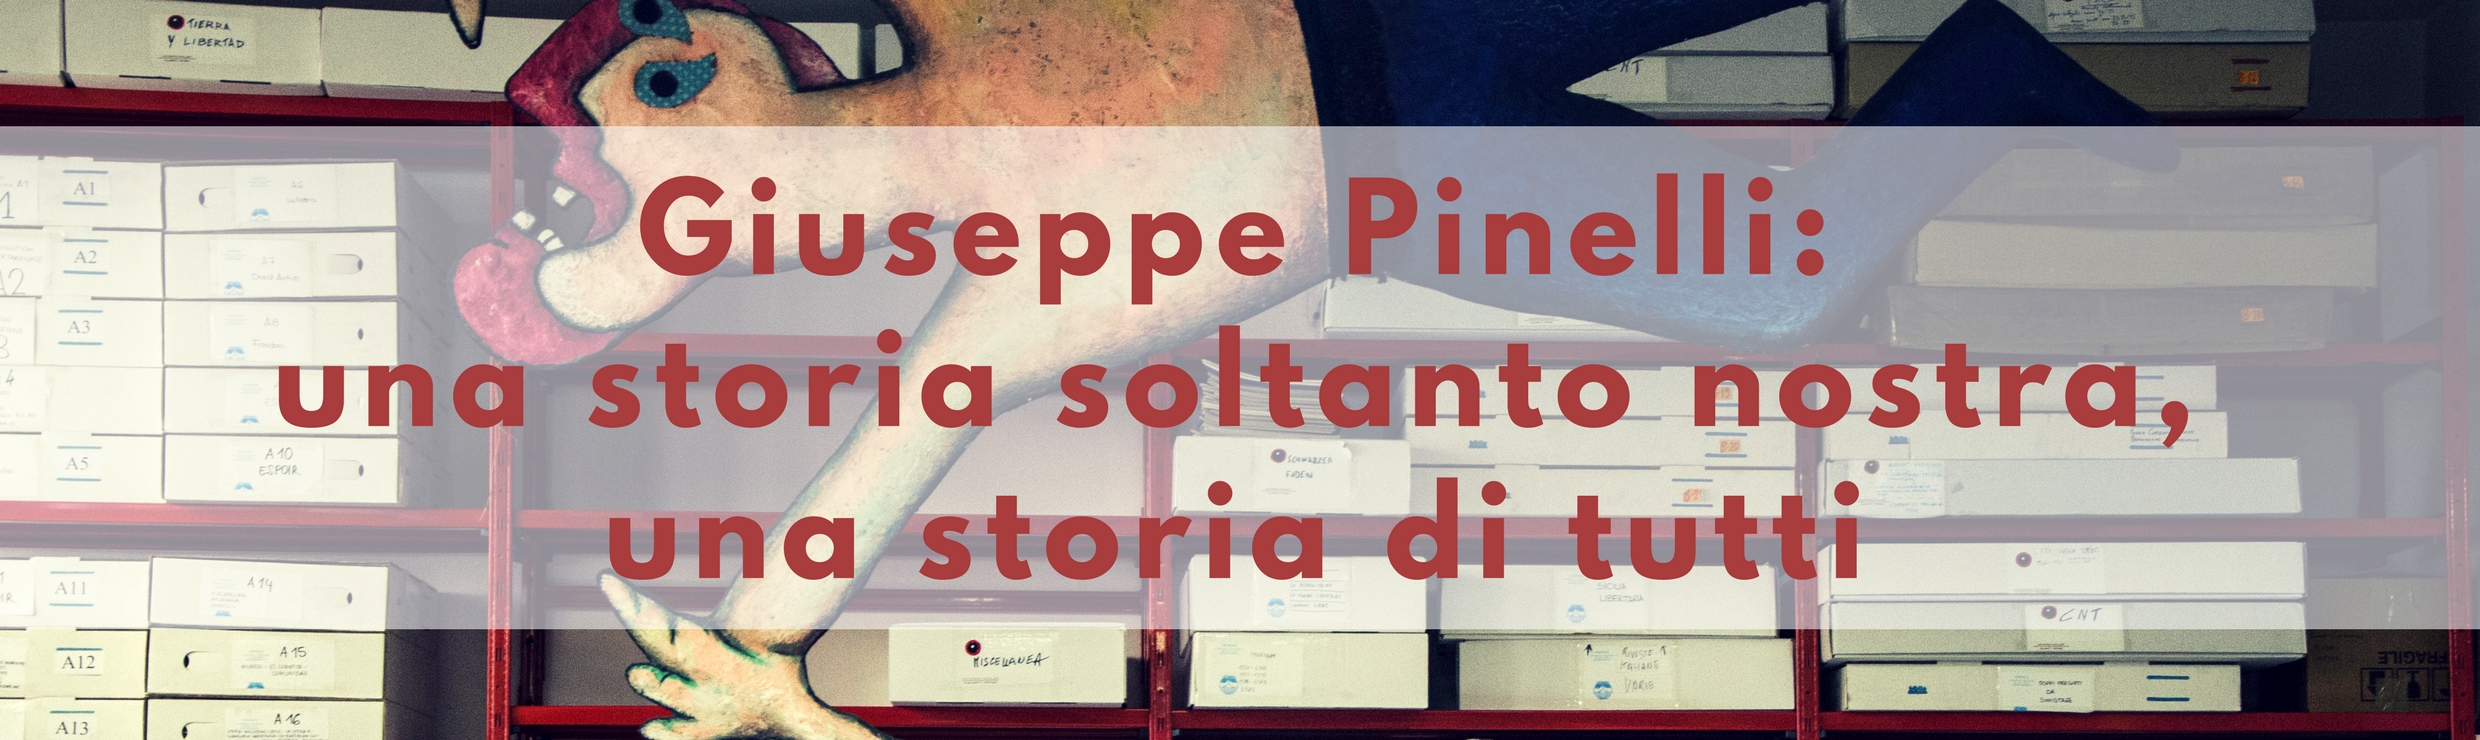 Giuseppe Pinelli: una storia soltanto nostra, una storia di tutti